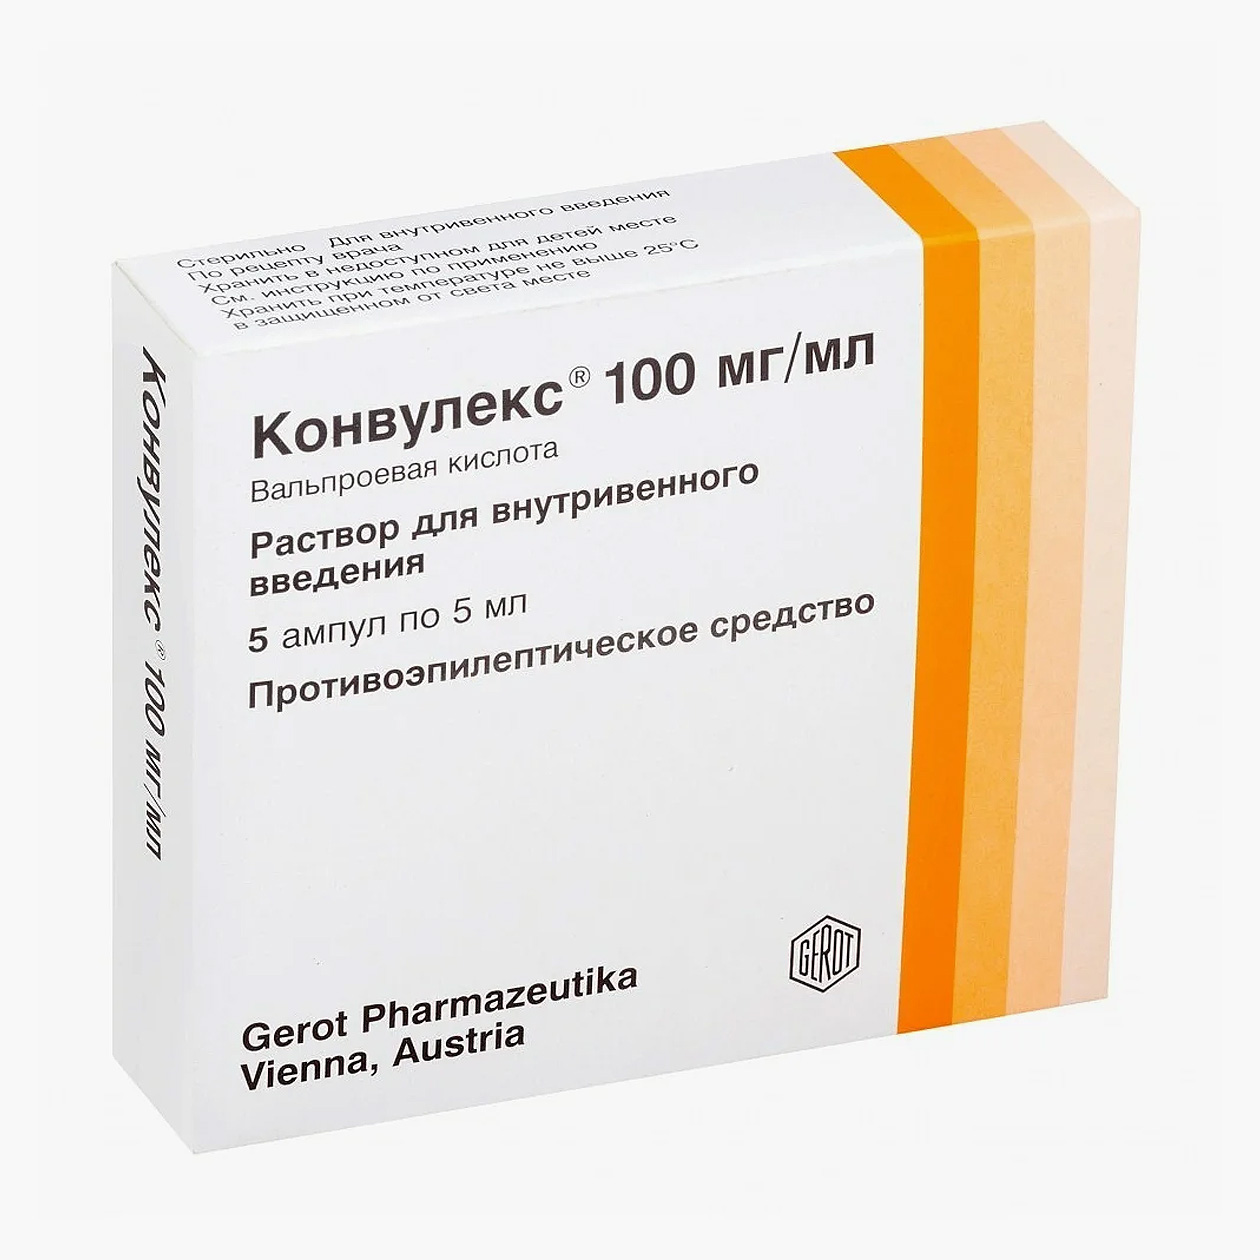 Инъекционный препарат с вальпроатом, цена начинается от 1000 ₽. Источник: apteka.ru